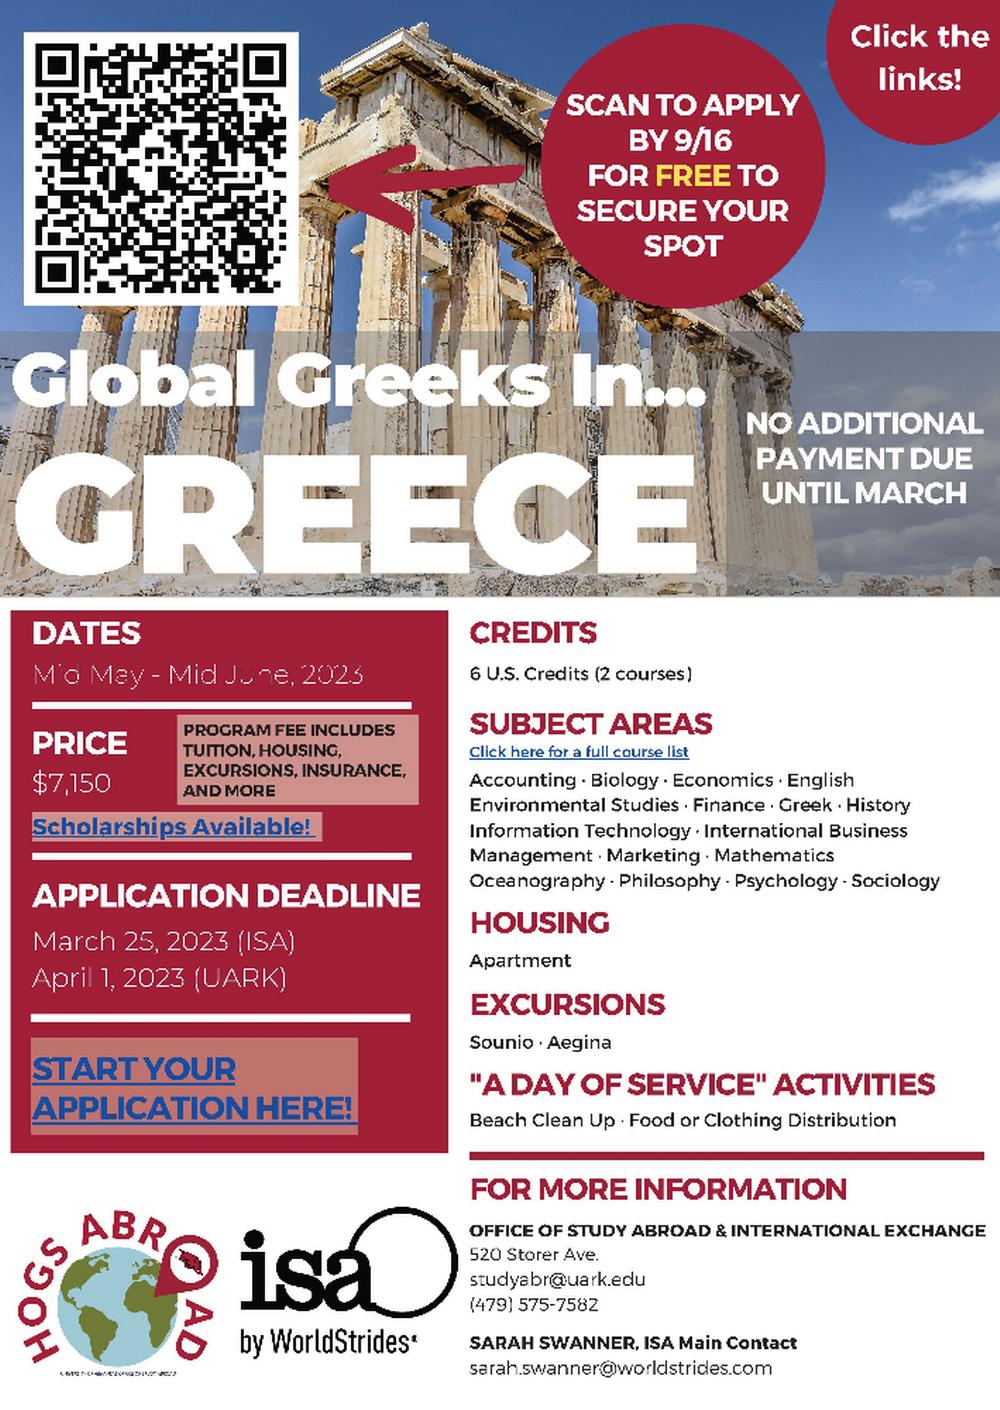 Global Greeks in Greece 2023